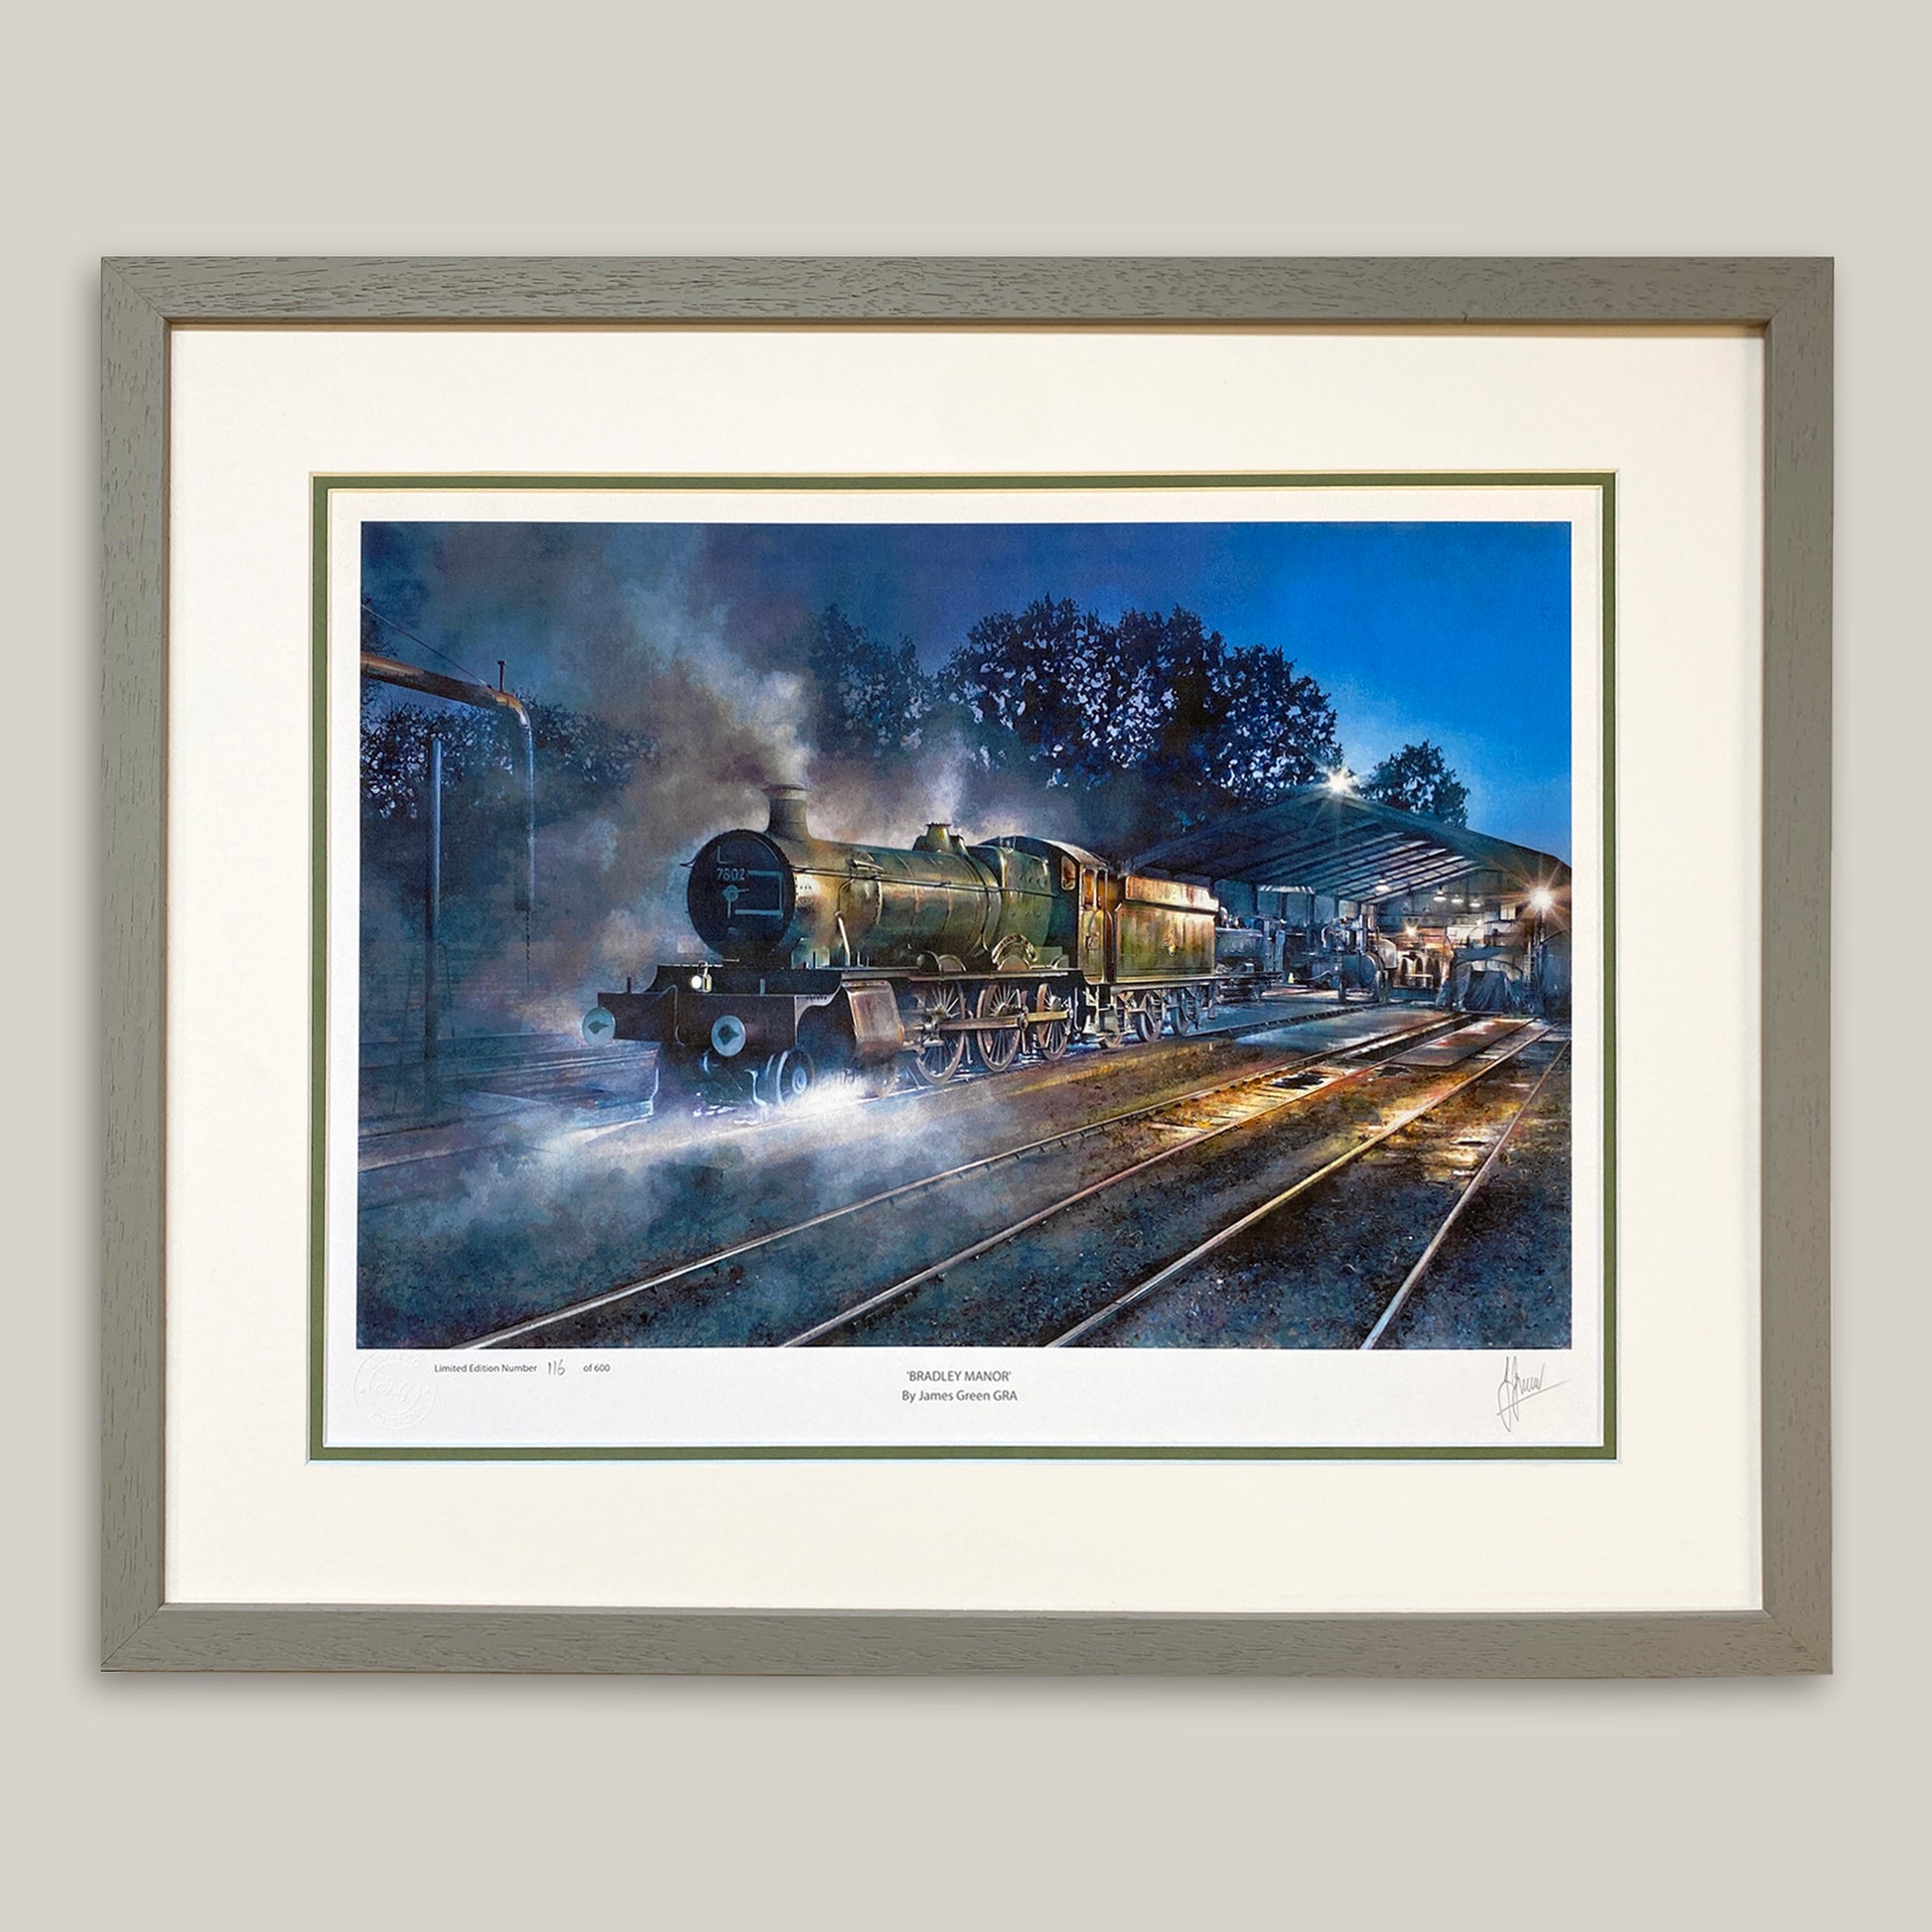 7802 locomotive print at Bridgnorth station, framed in a light grey moulding